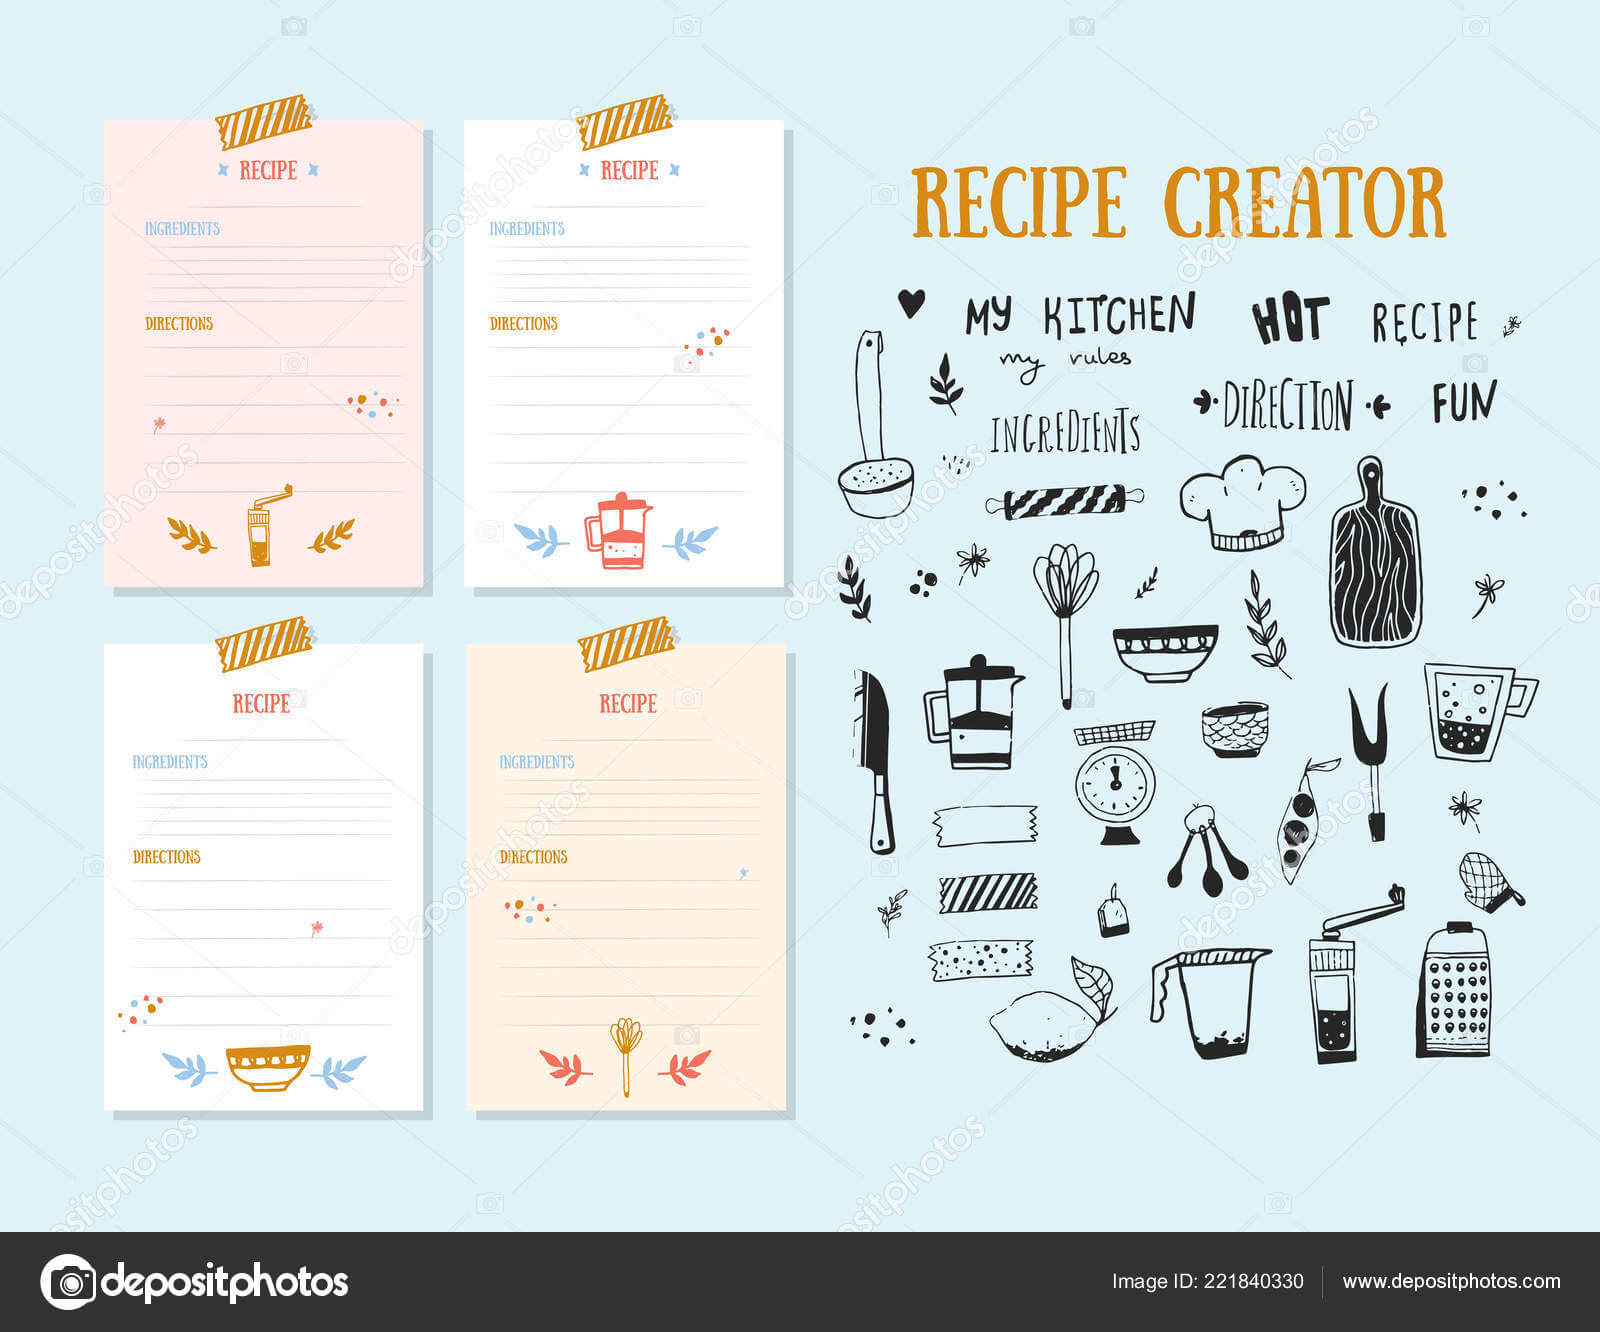 Cookbook Design Template | Modern Recipe Card Template Set Regarding Recipe Card Design Template